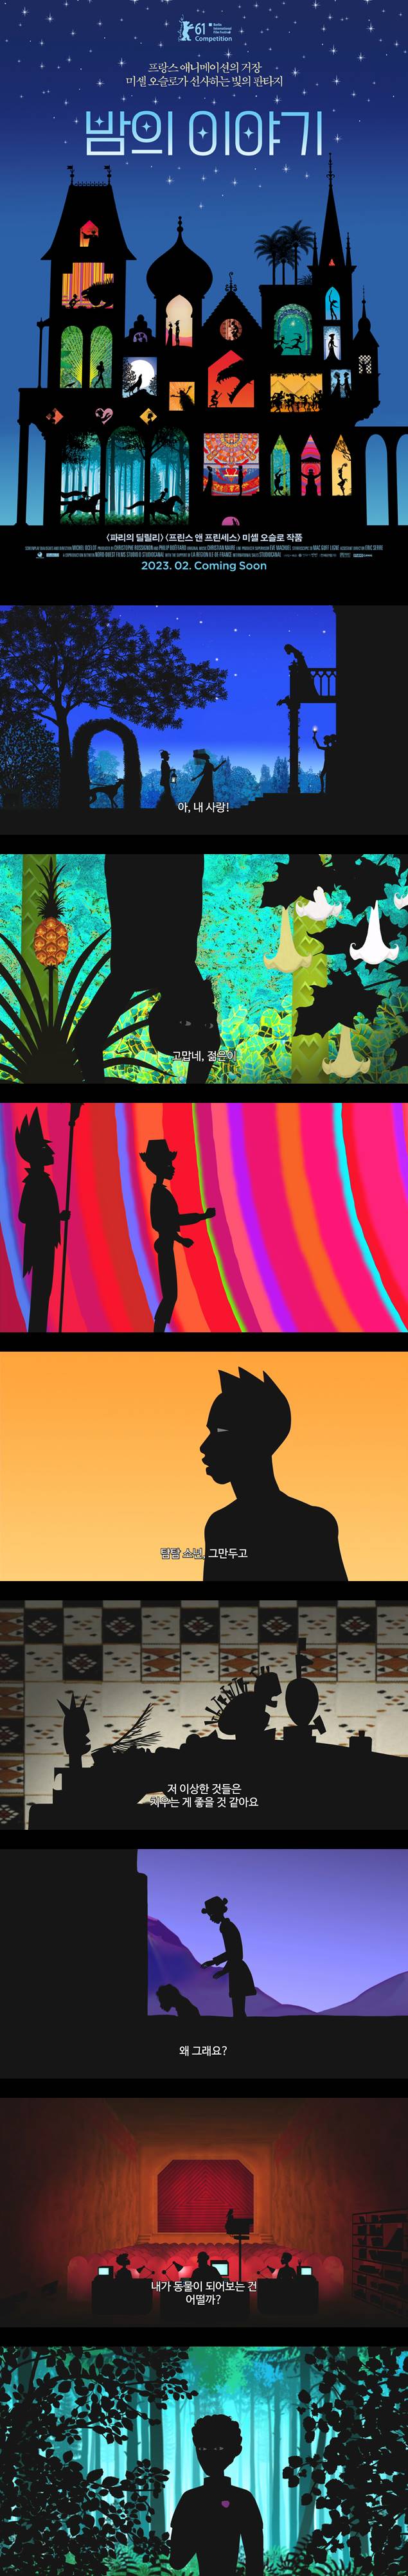 [밤의 이야기] FHD 프랑스 애니메이션 거장 미셸 오슬로가 선사하는 빛의 판타지